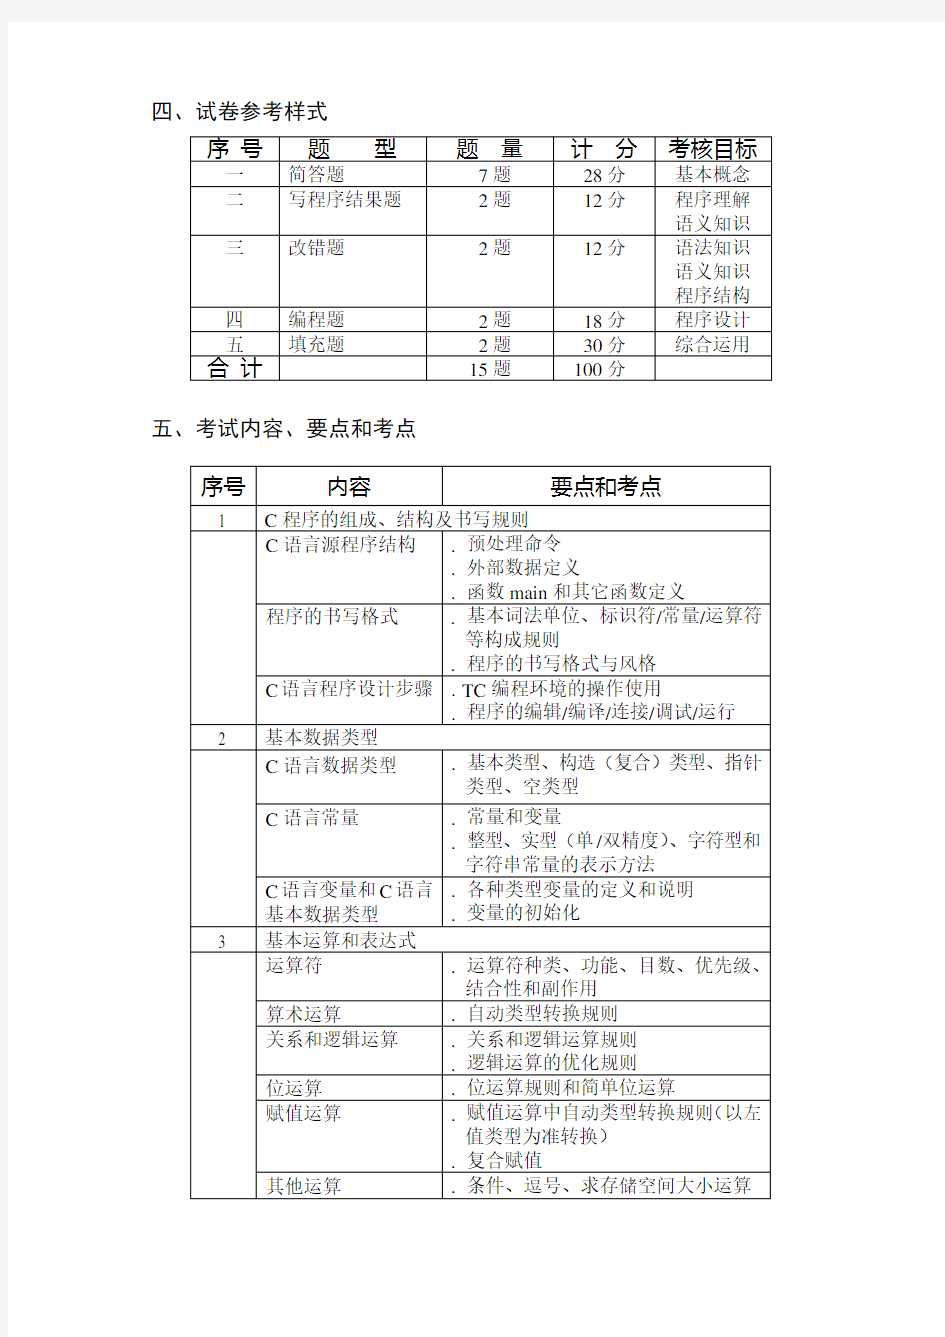 上海市高等学校计算机等级考试(二级)